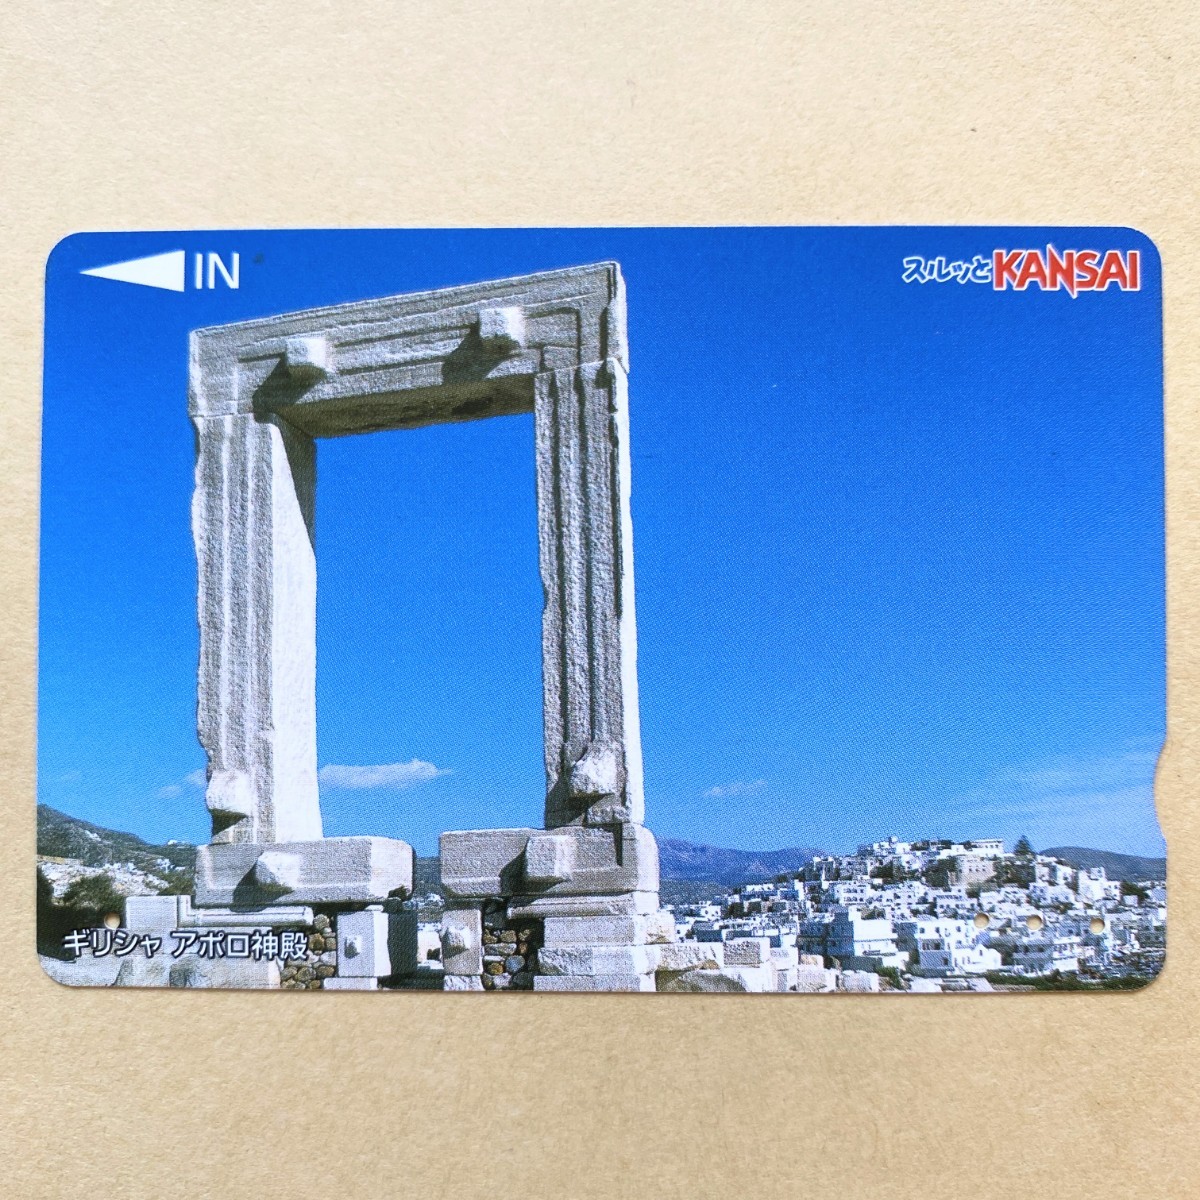 【使用済】 スルッとKANSAI 南海電鉄 ギリシャ アポロ神殿 _画像1